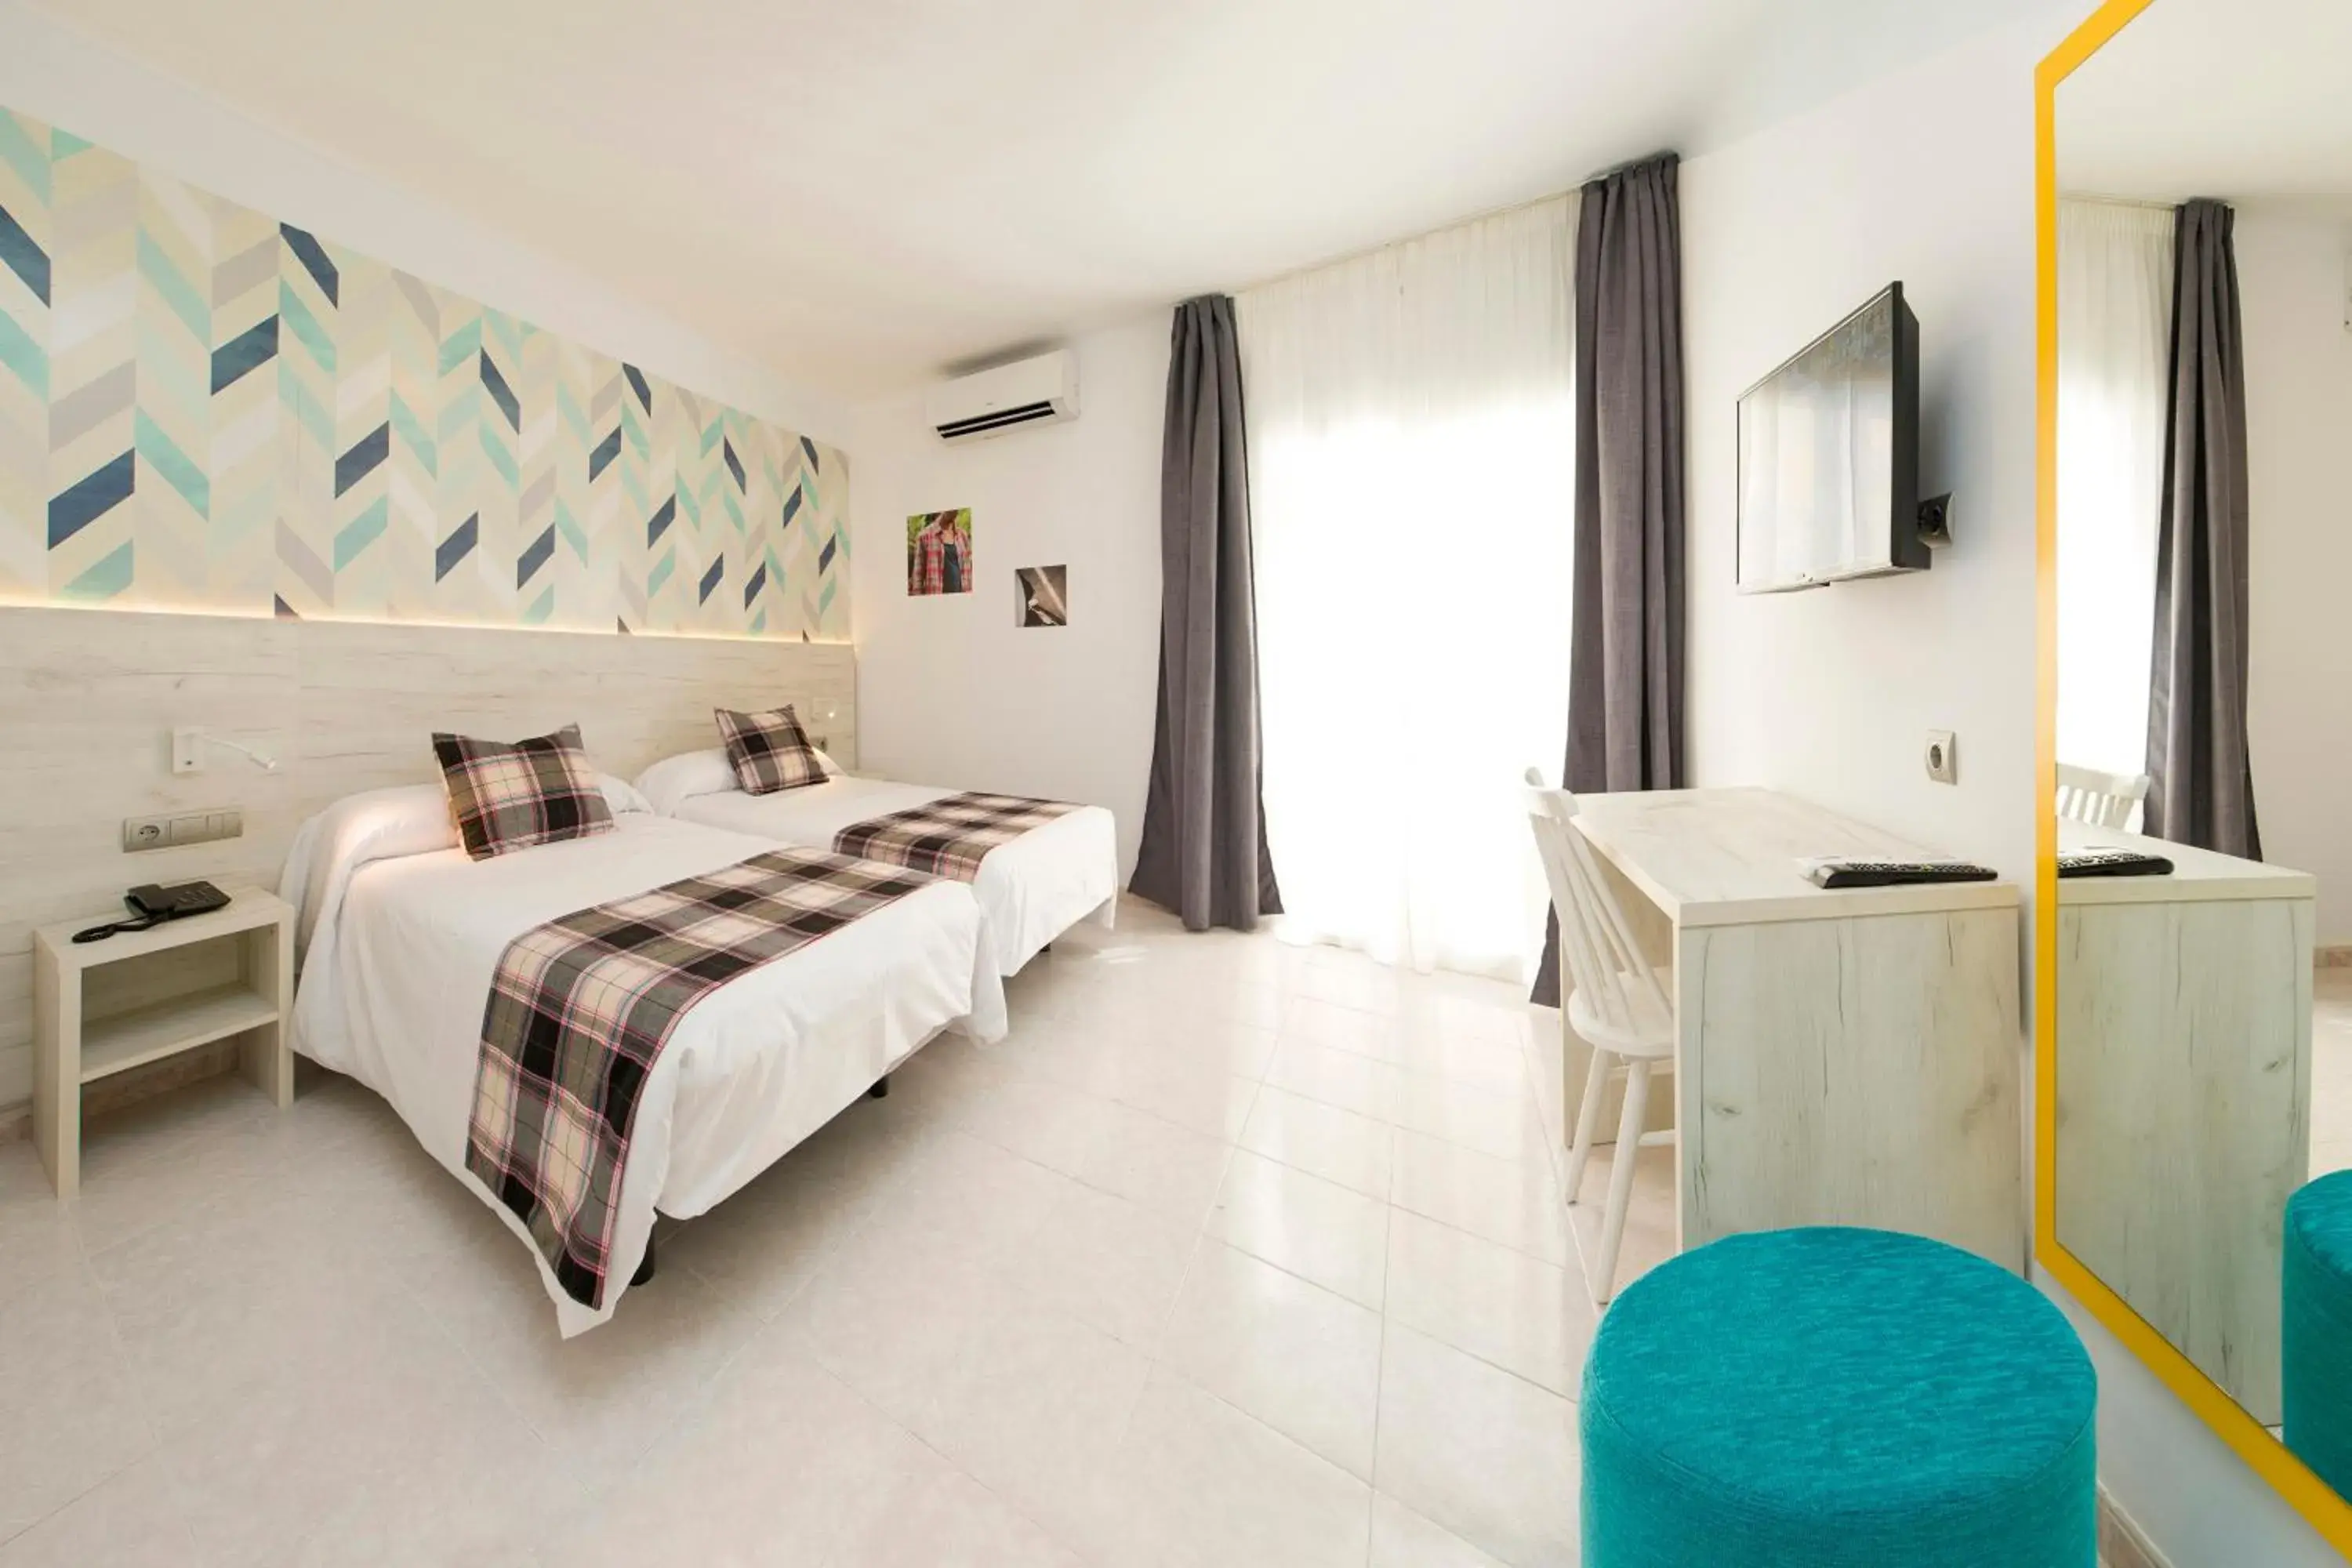 Photo of the whole room in Hotel Vibra Lei Ibiza